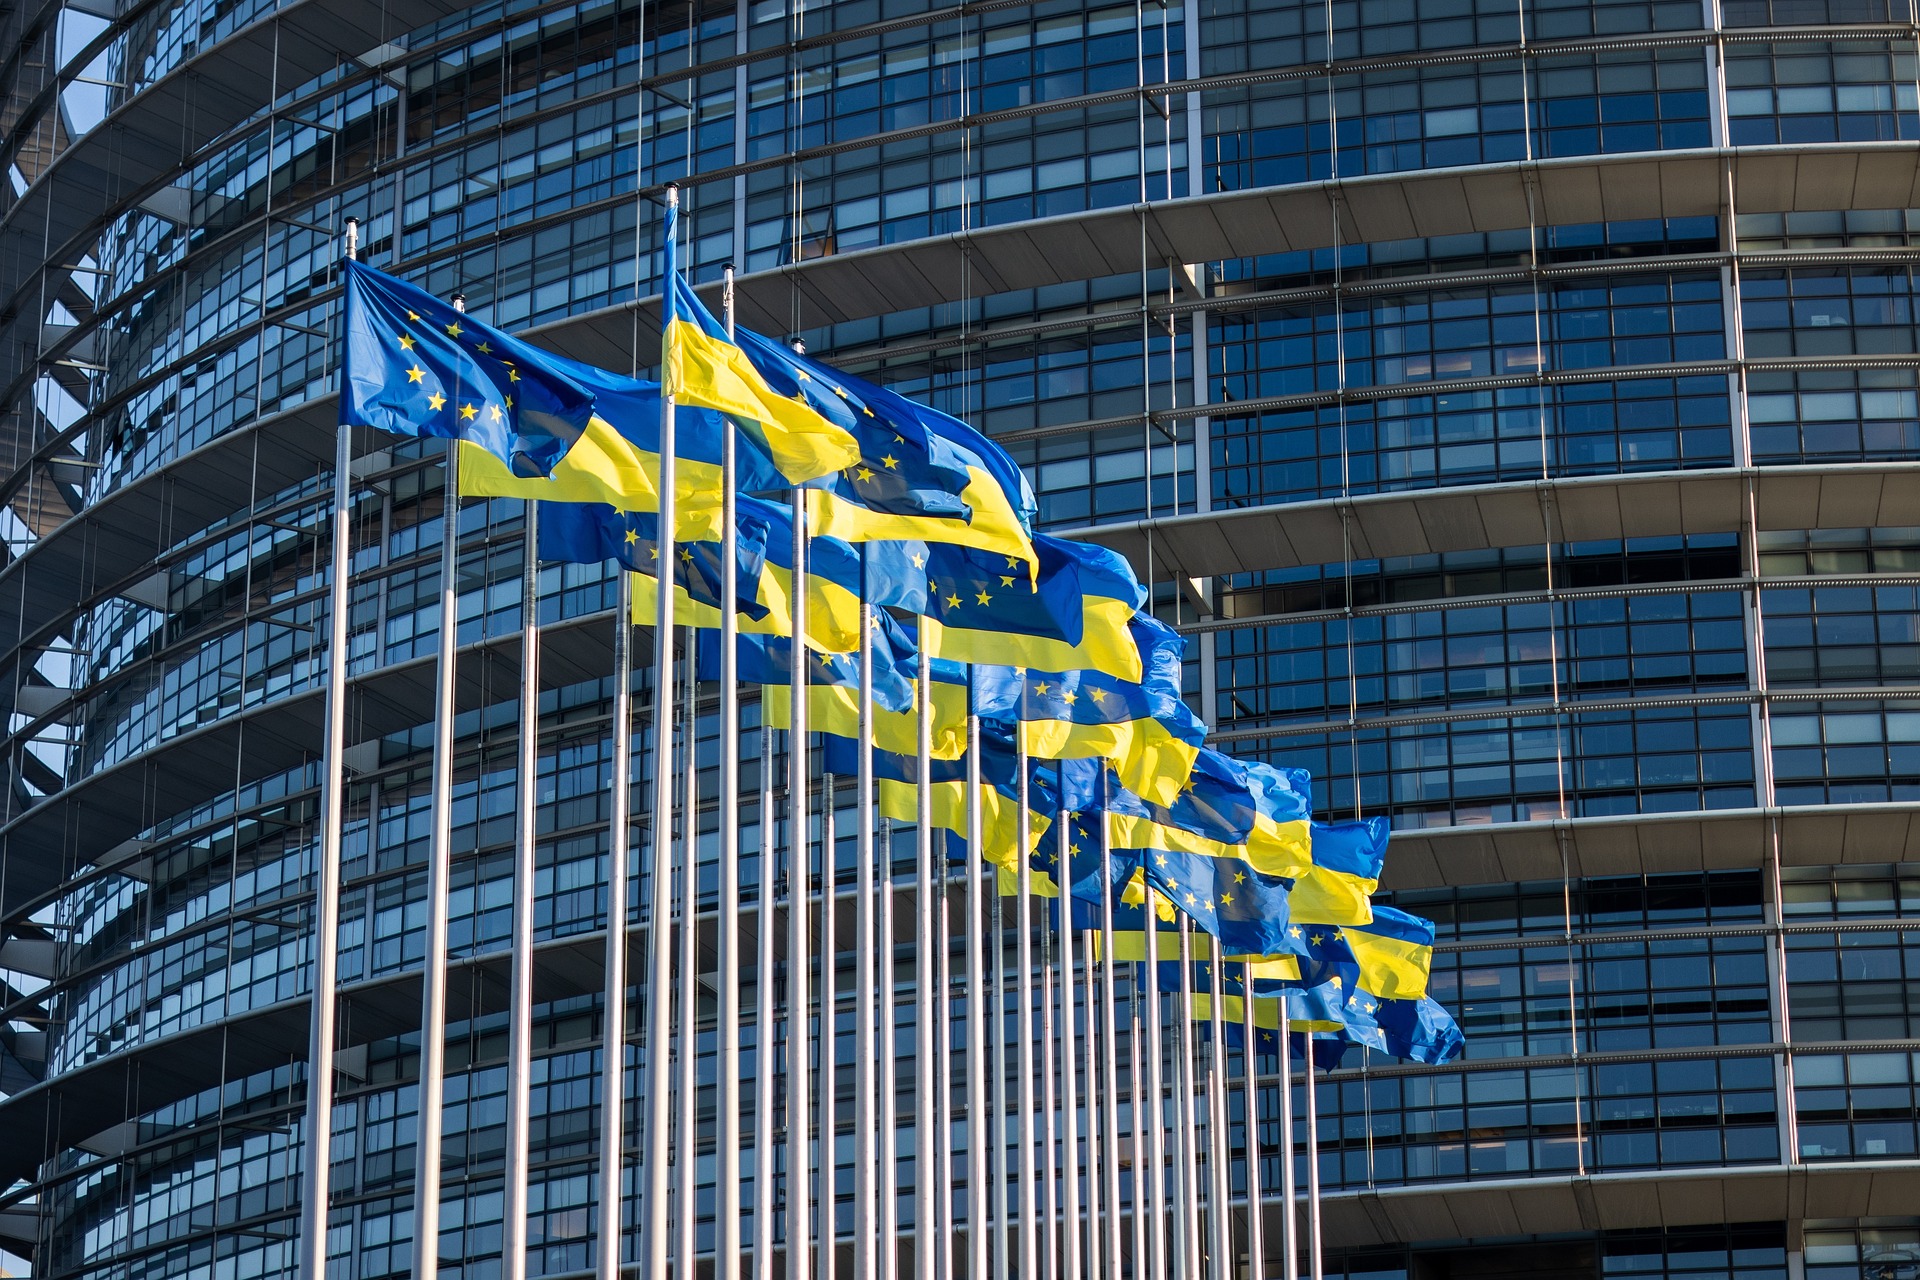 Σε μερική συμφωνία κατέληξαν τα κράτη μέλη της ΕΕ - Διαπραγματεύσεις για την οικονομική στήριξη της Ουκρανίας